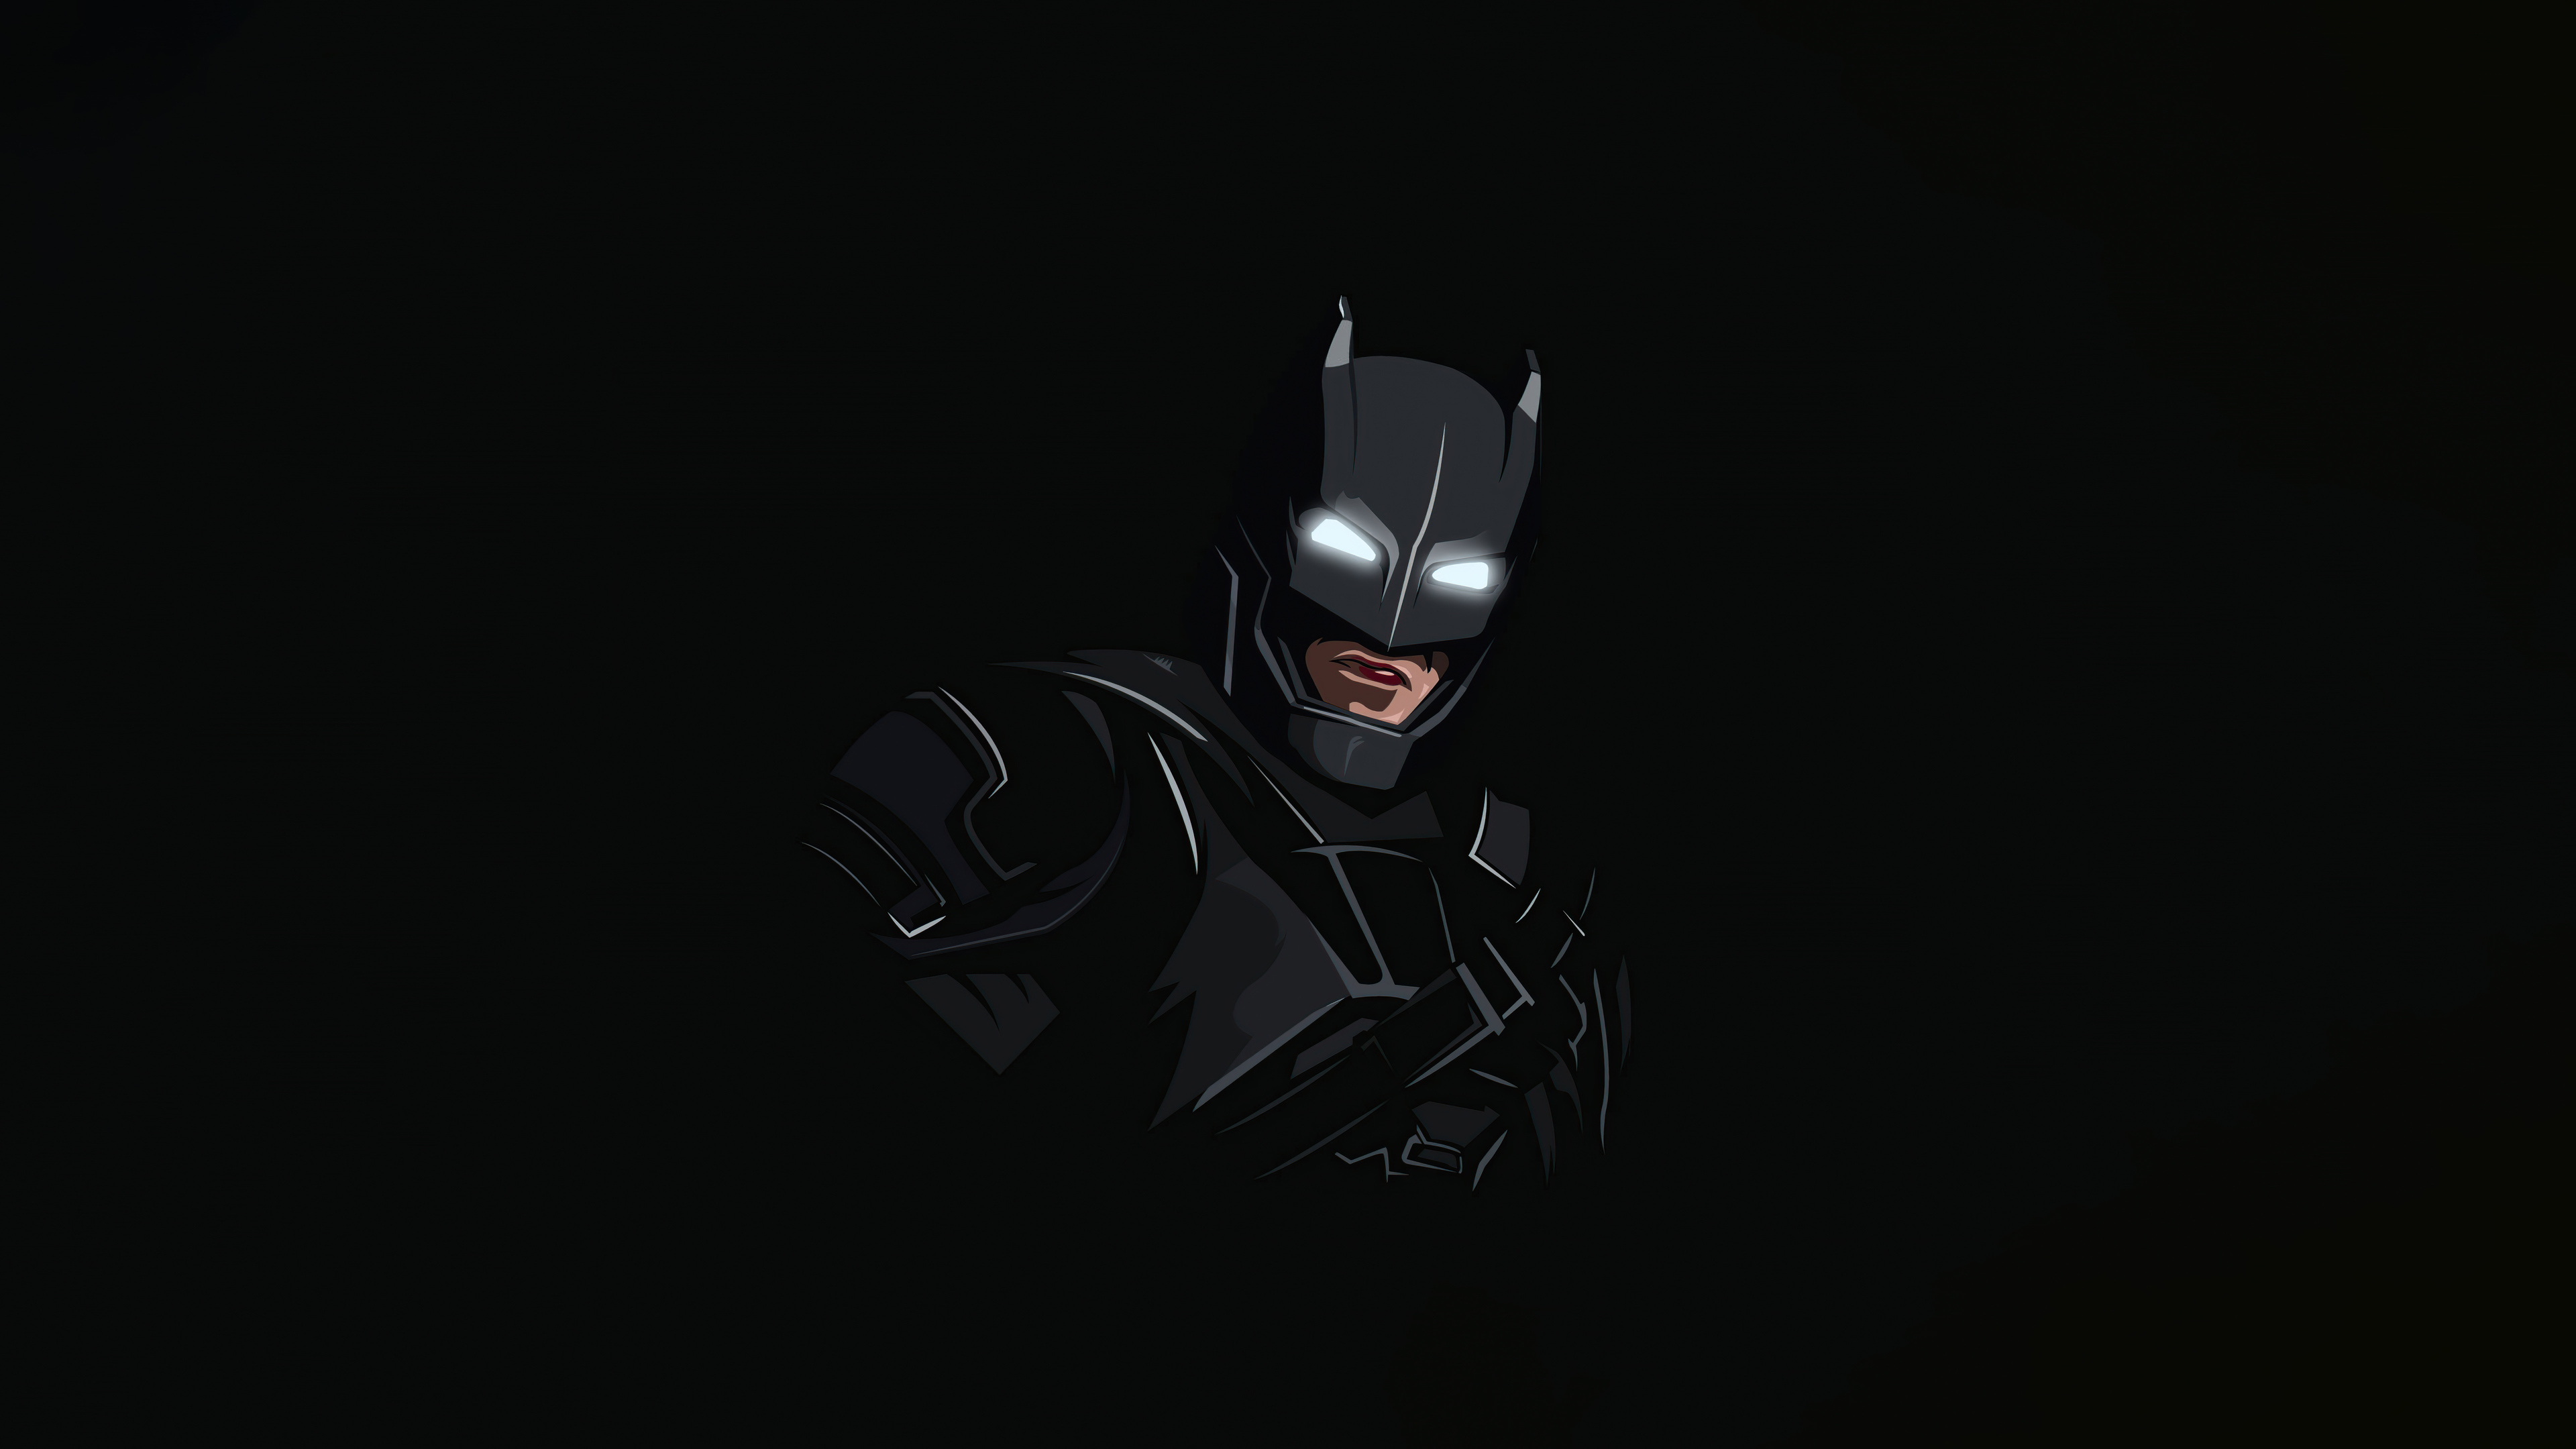 Descarga gratuita de fondo de pantalla para móvil de Minimalista, Historietas, The Batman.